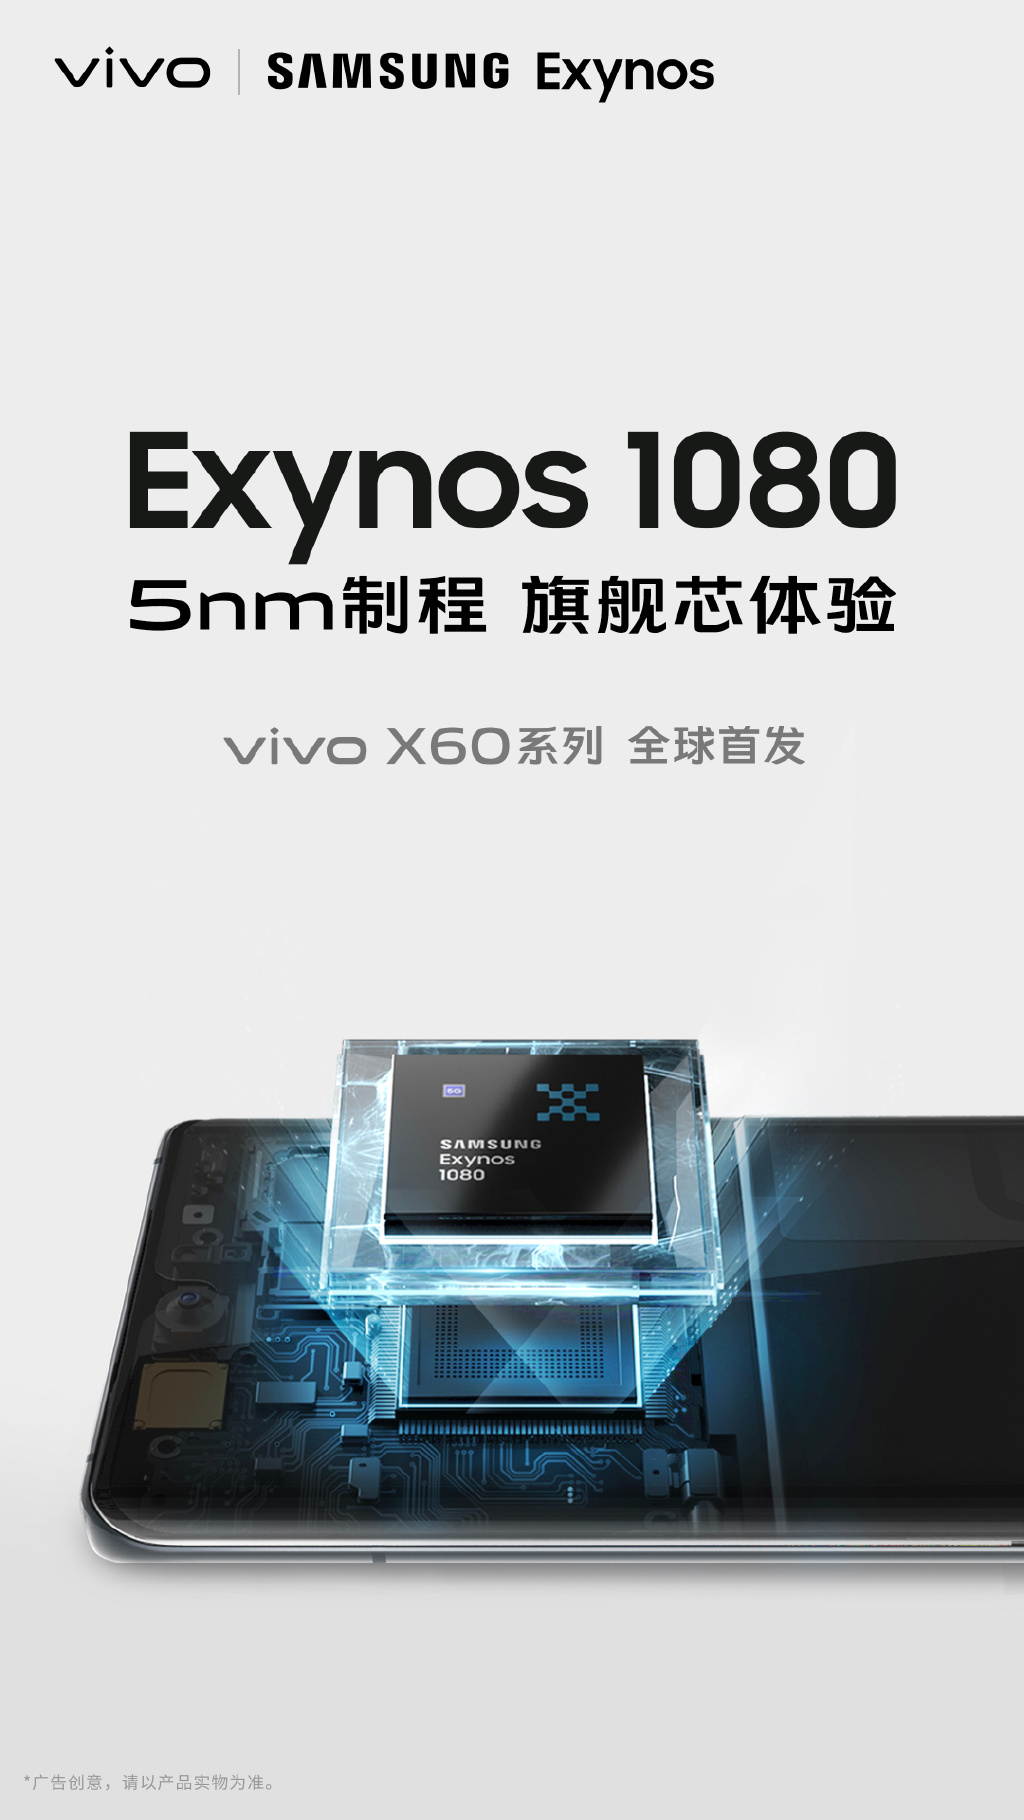 小米Mi 11和Vivo X60系列将推出新的处理器